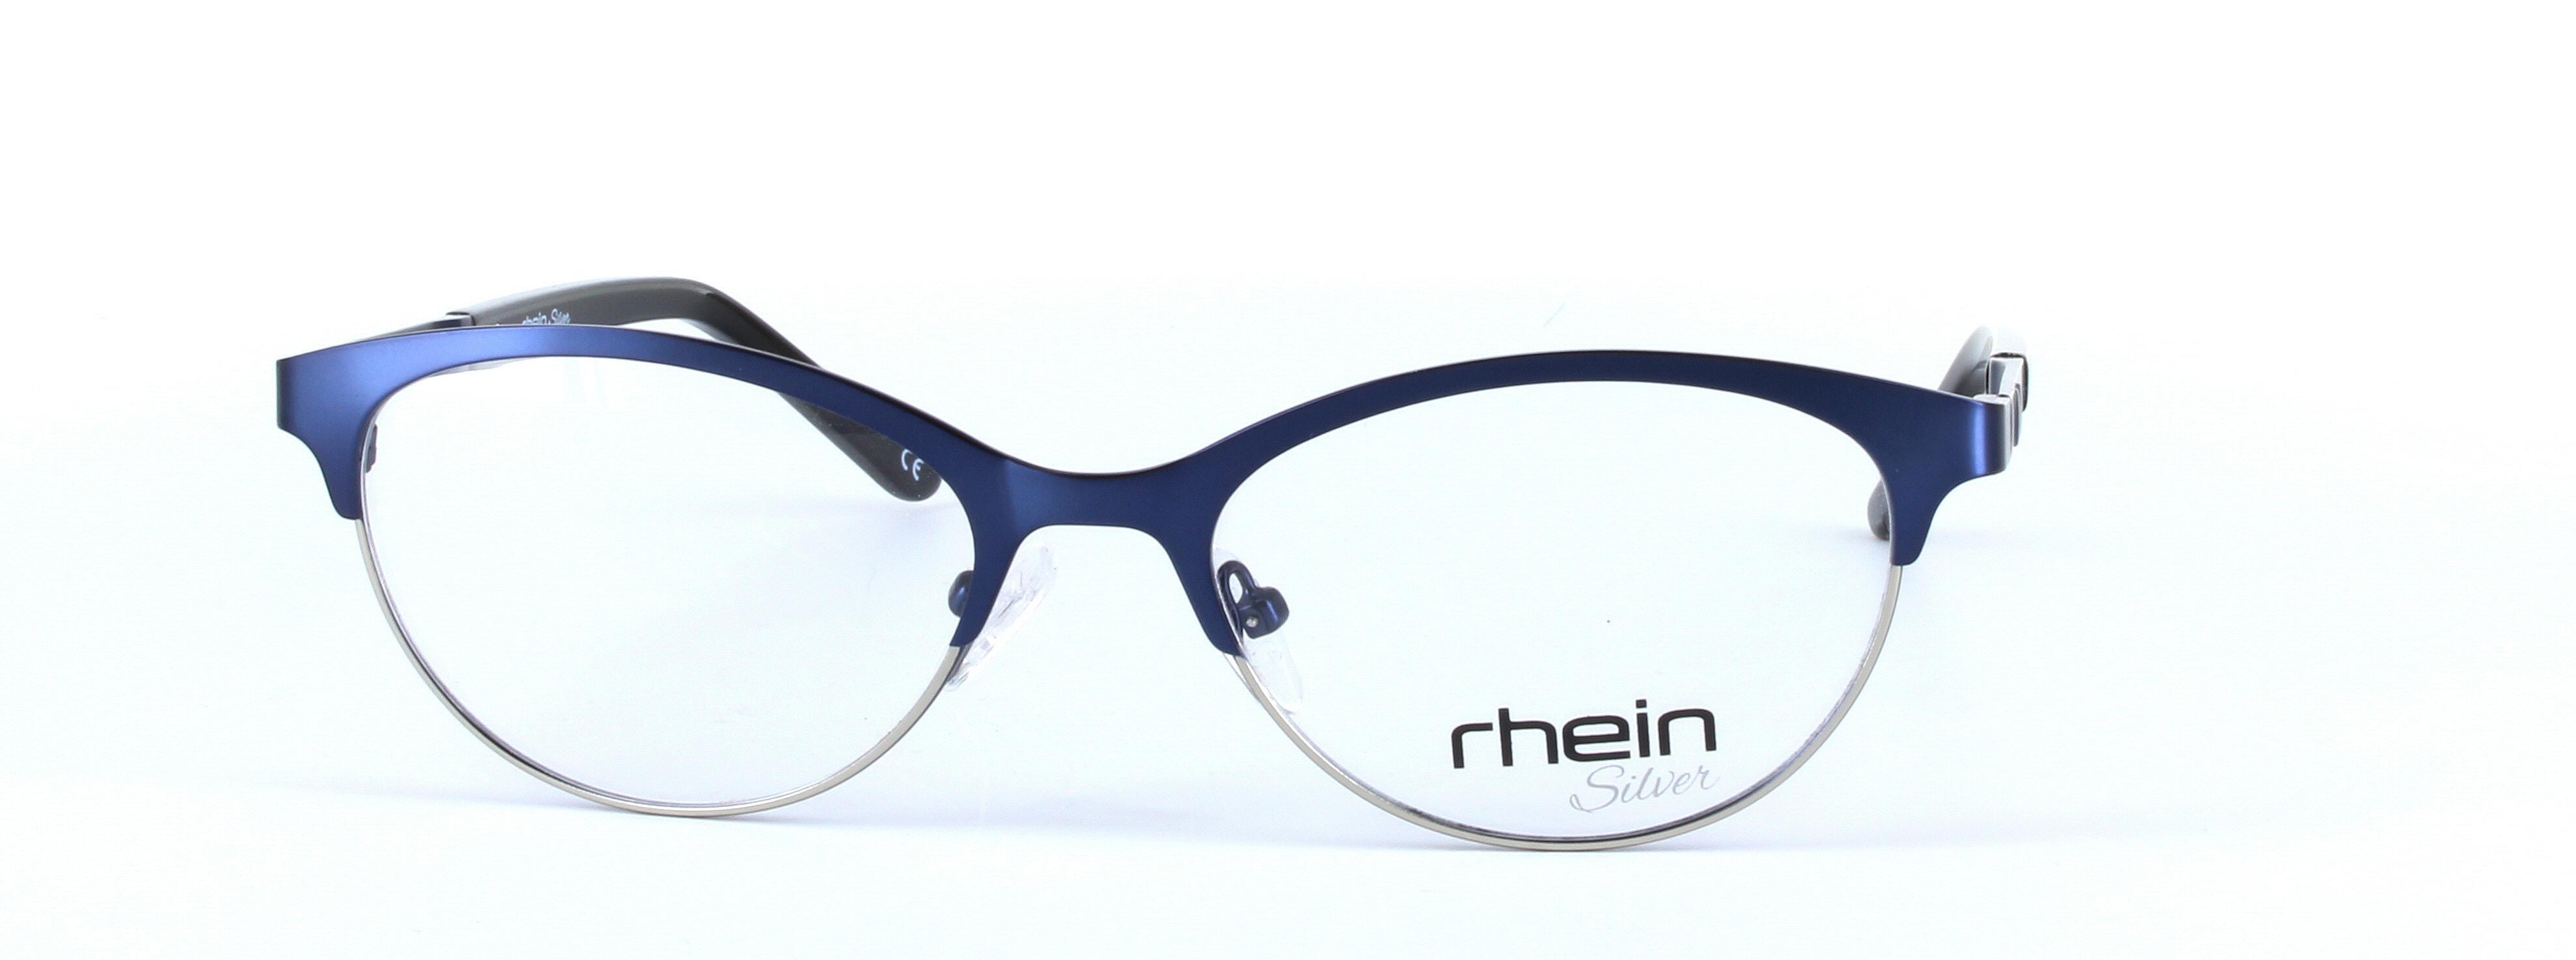 Honey Blue Full Rim Oval Metal Glasses - Image View 5